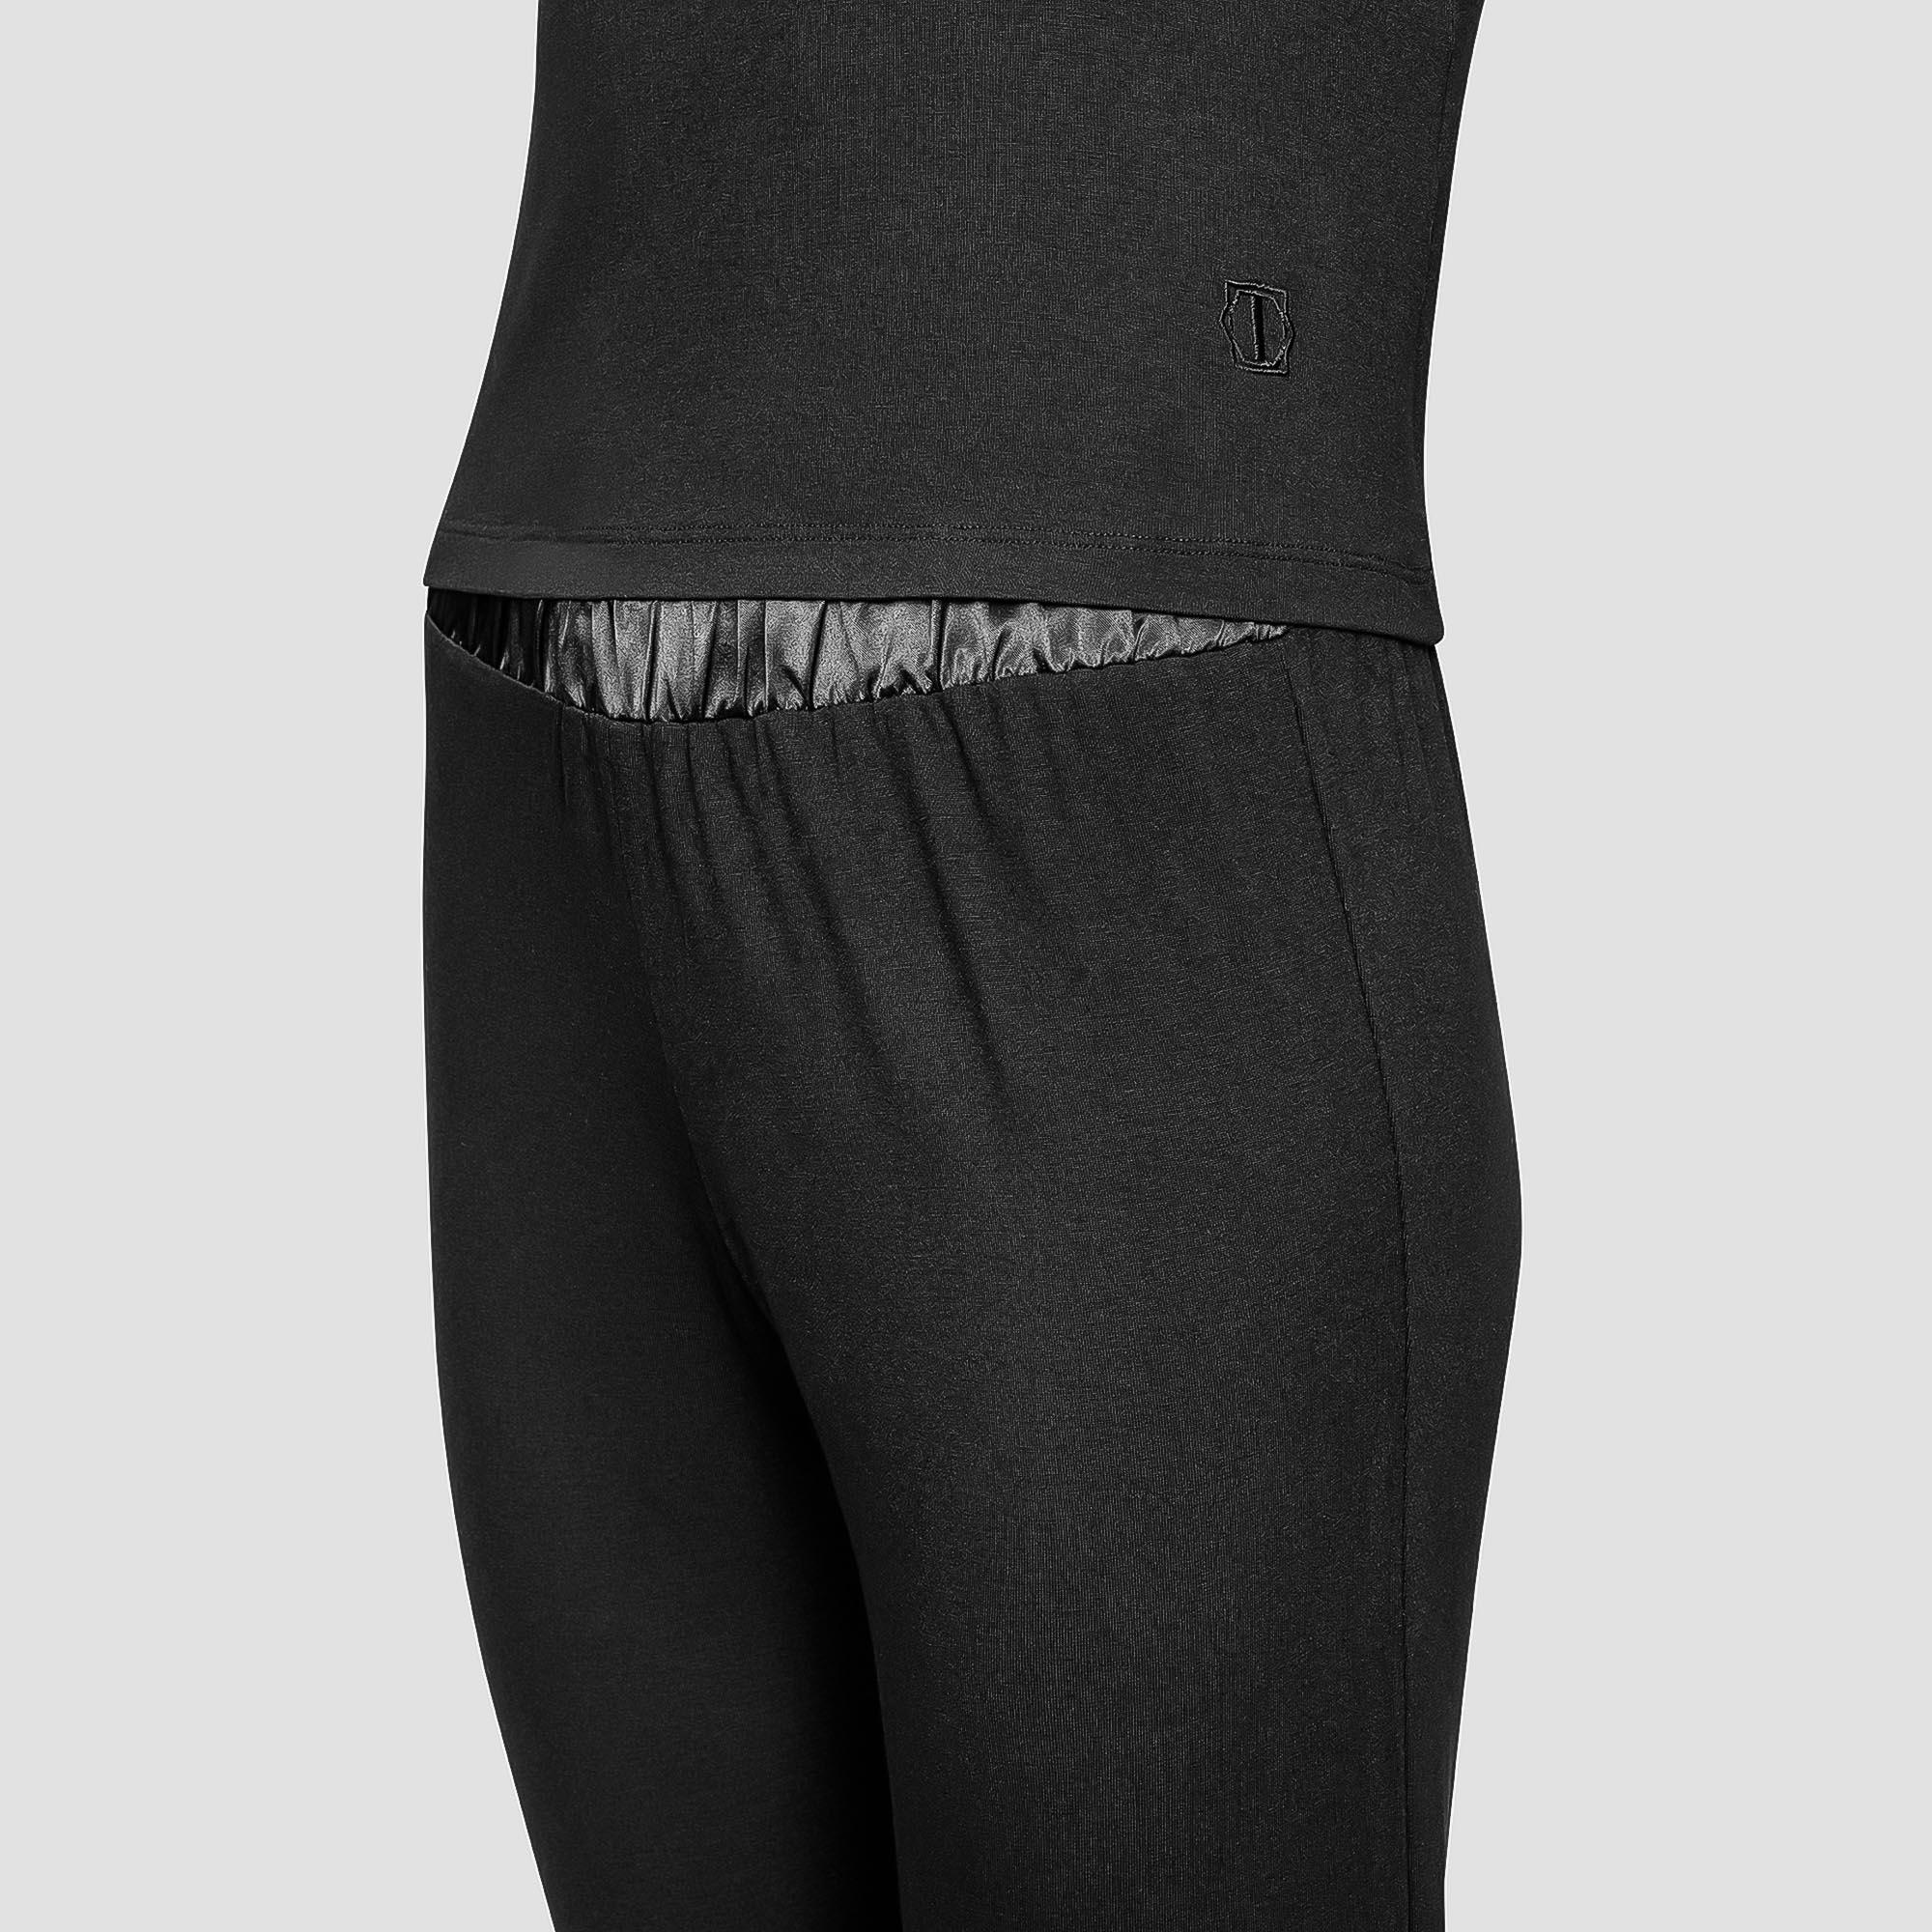 Пижама Togas Ингелла черная женская M(46) 2 предмета, размер M(46) - фото 2